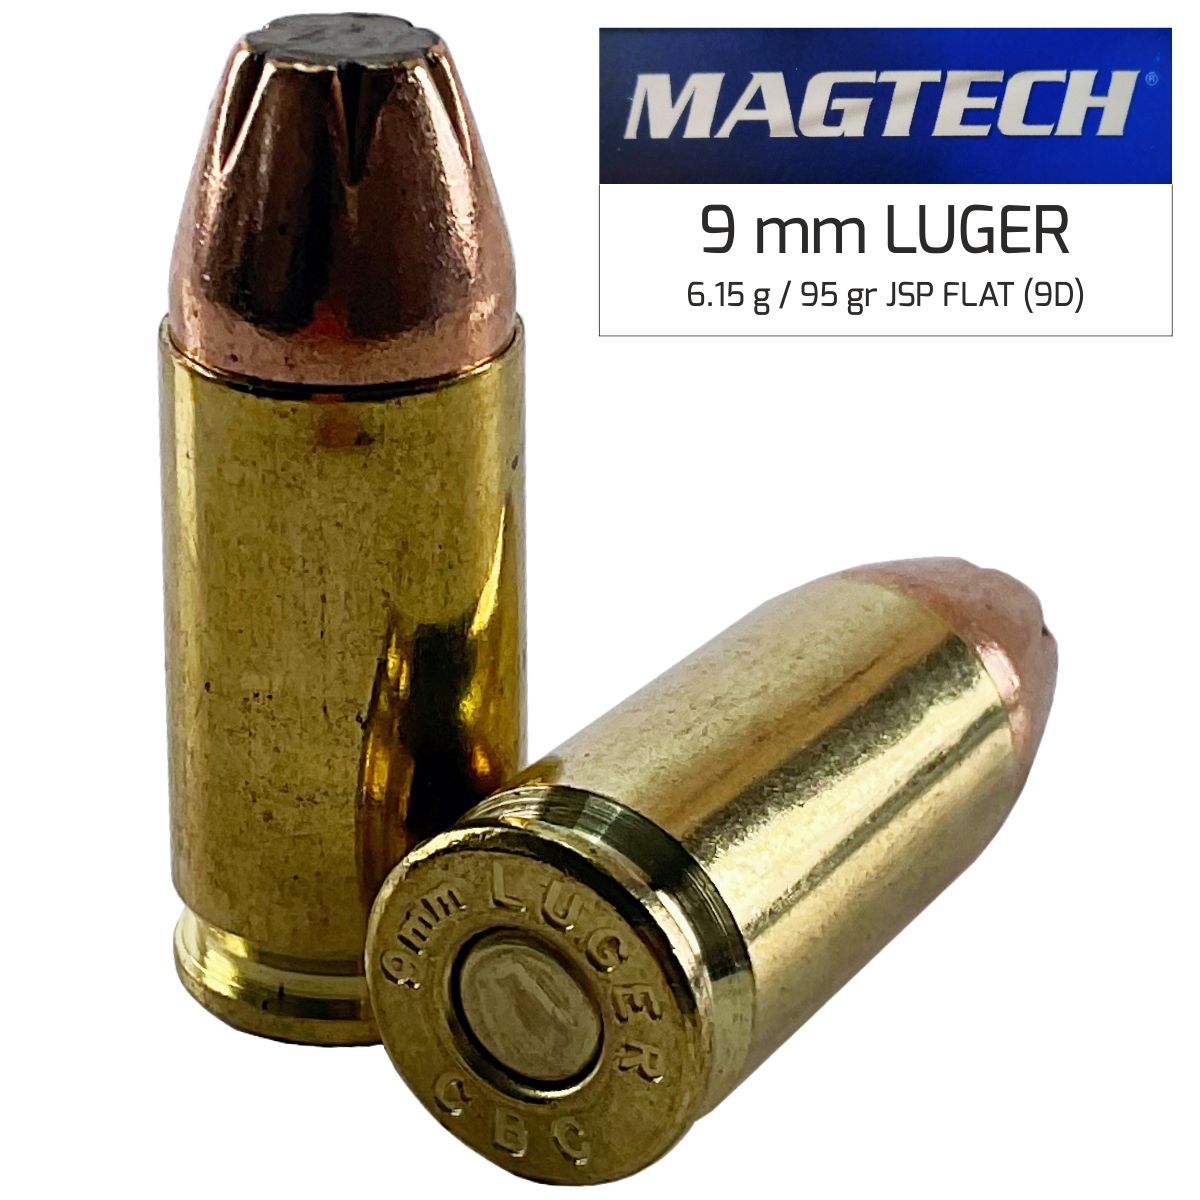 Náboj Magtech 9 mm Luger FMJ (9B) 8,03 g, 124 grs